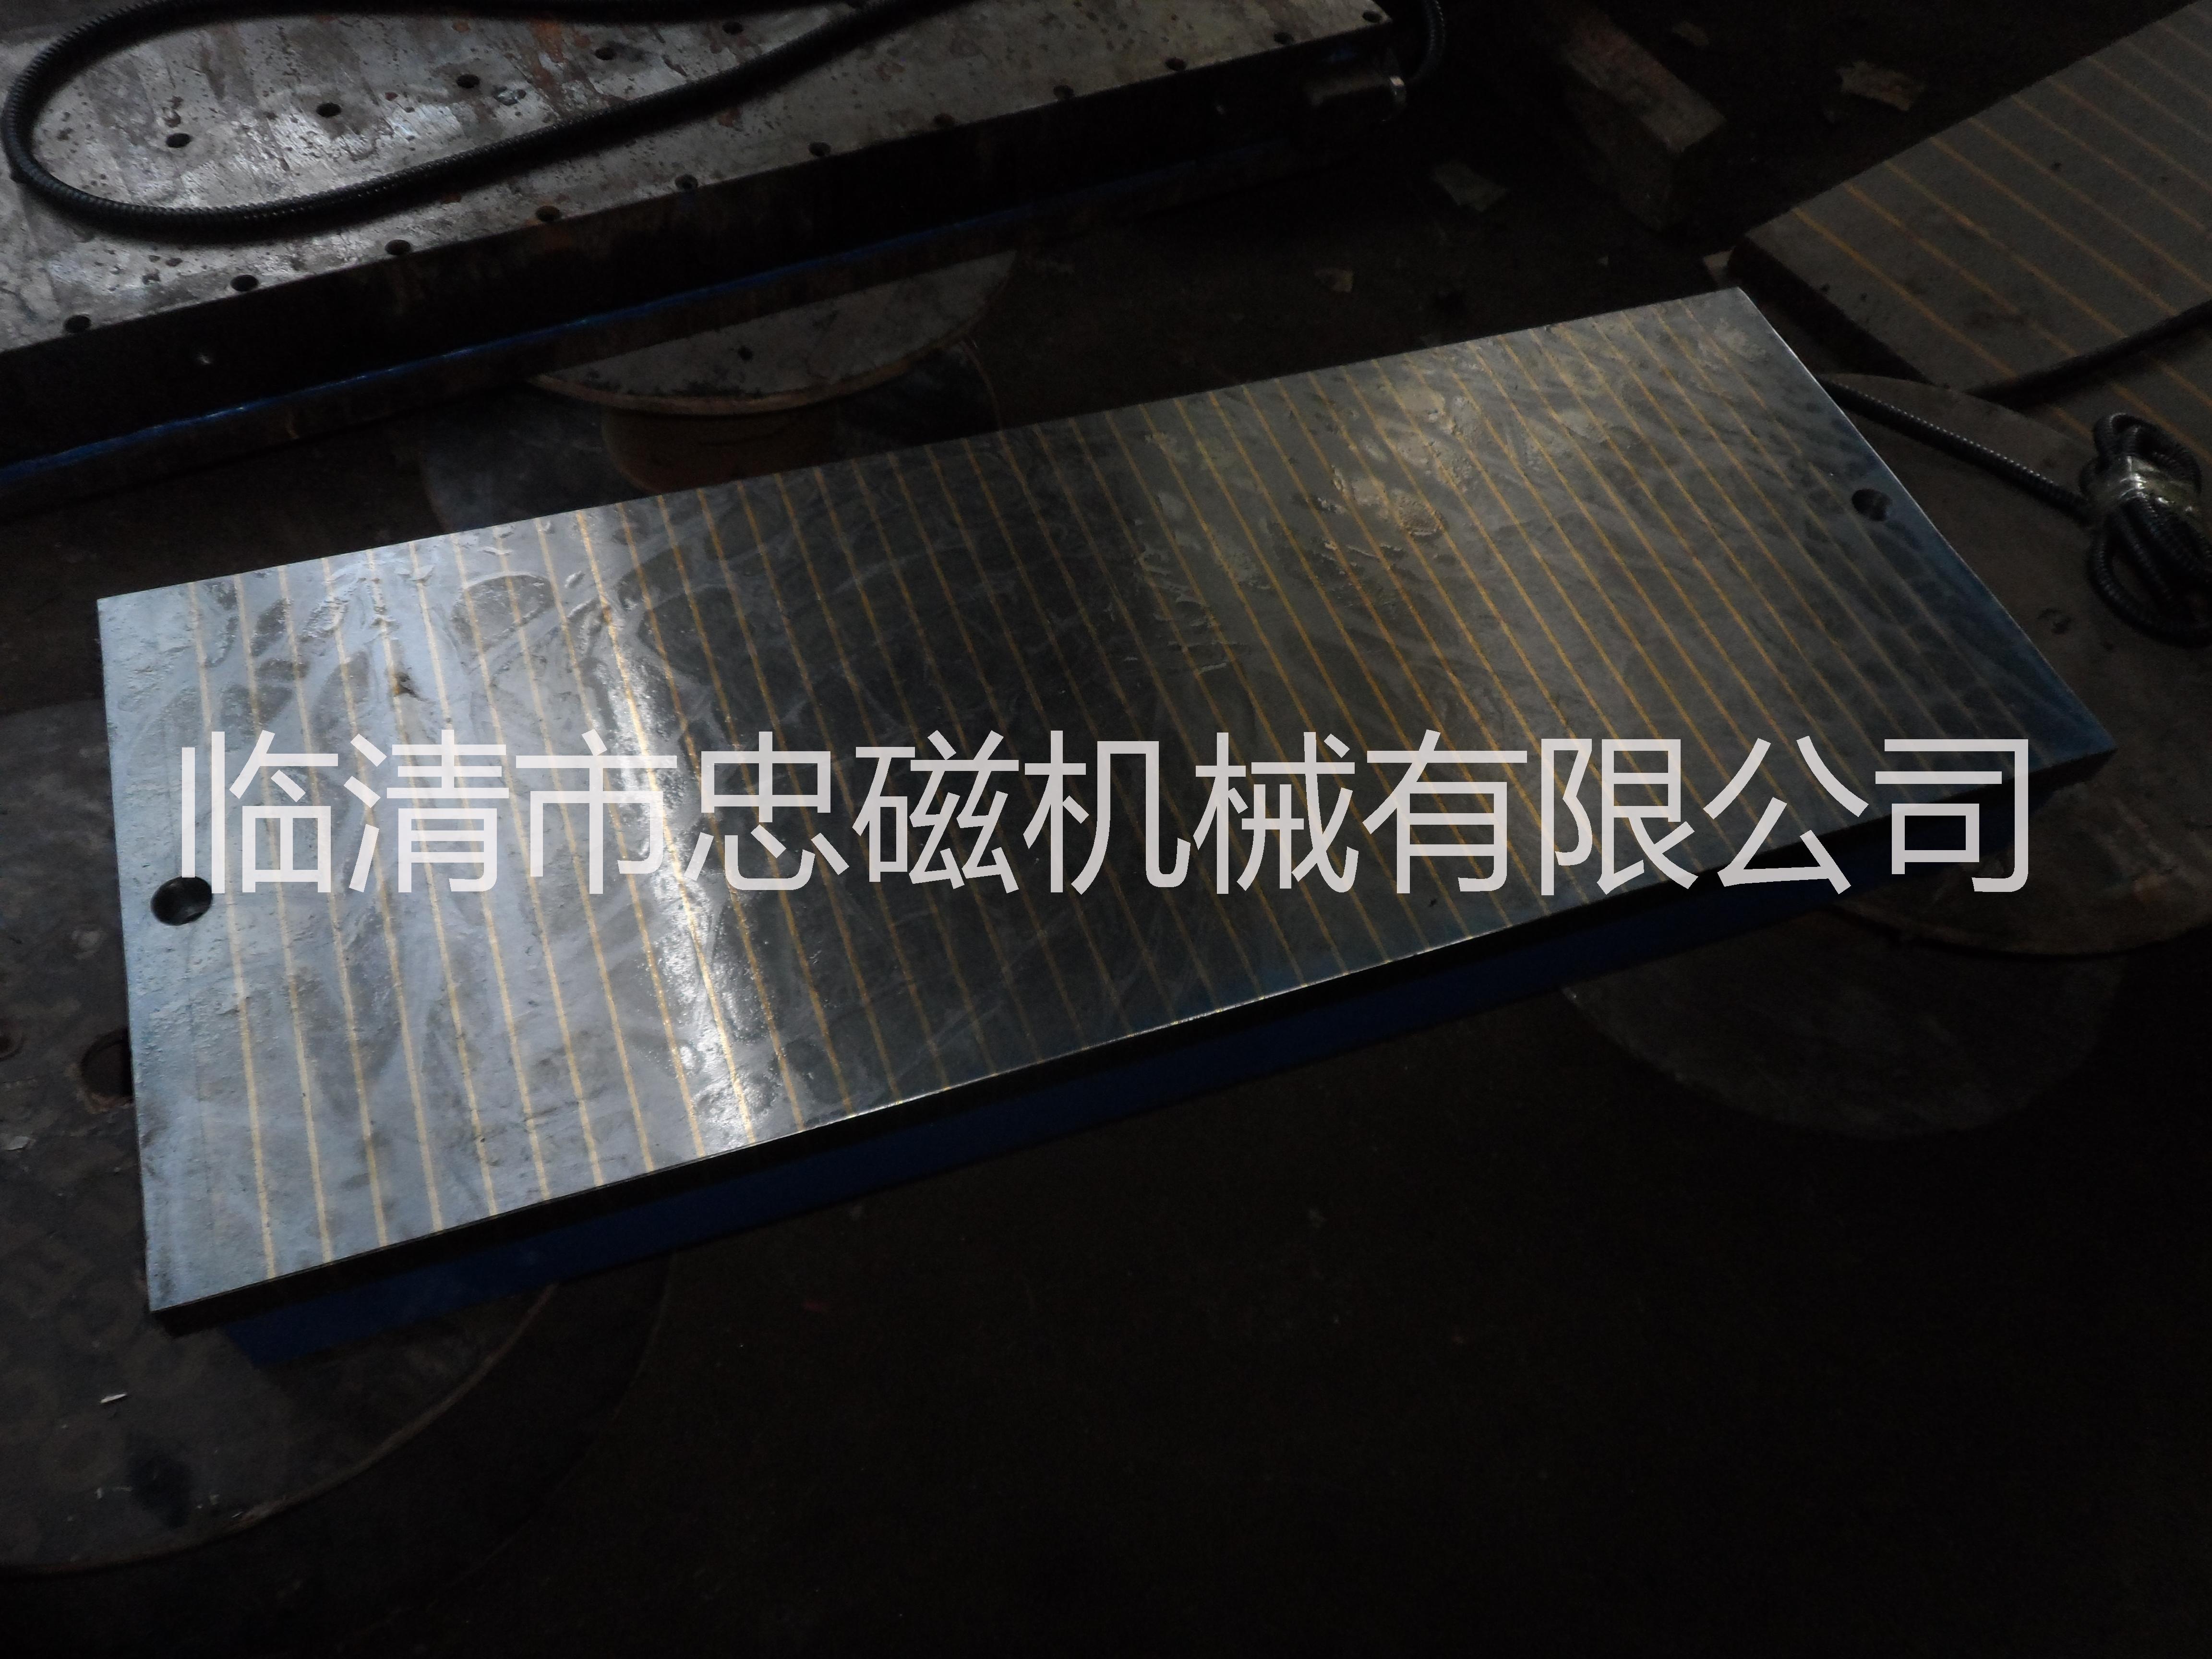 安徽淮安磨用电磁吸盘生产维修厂家图片|安徽